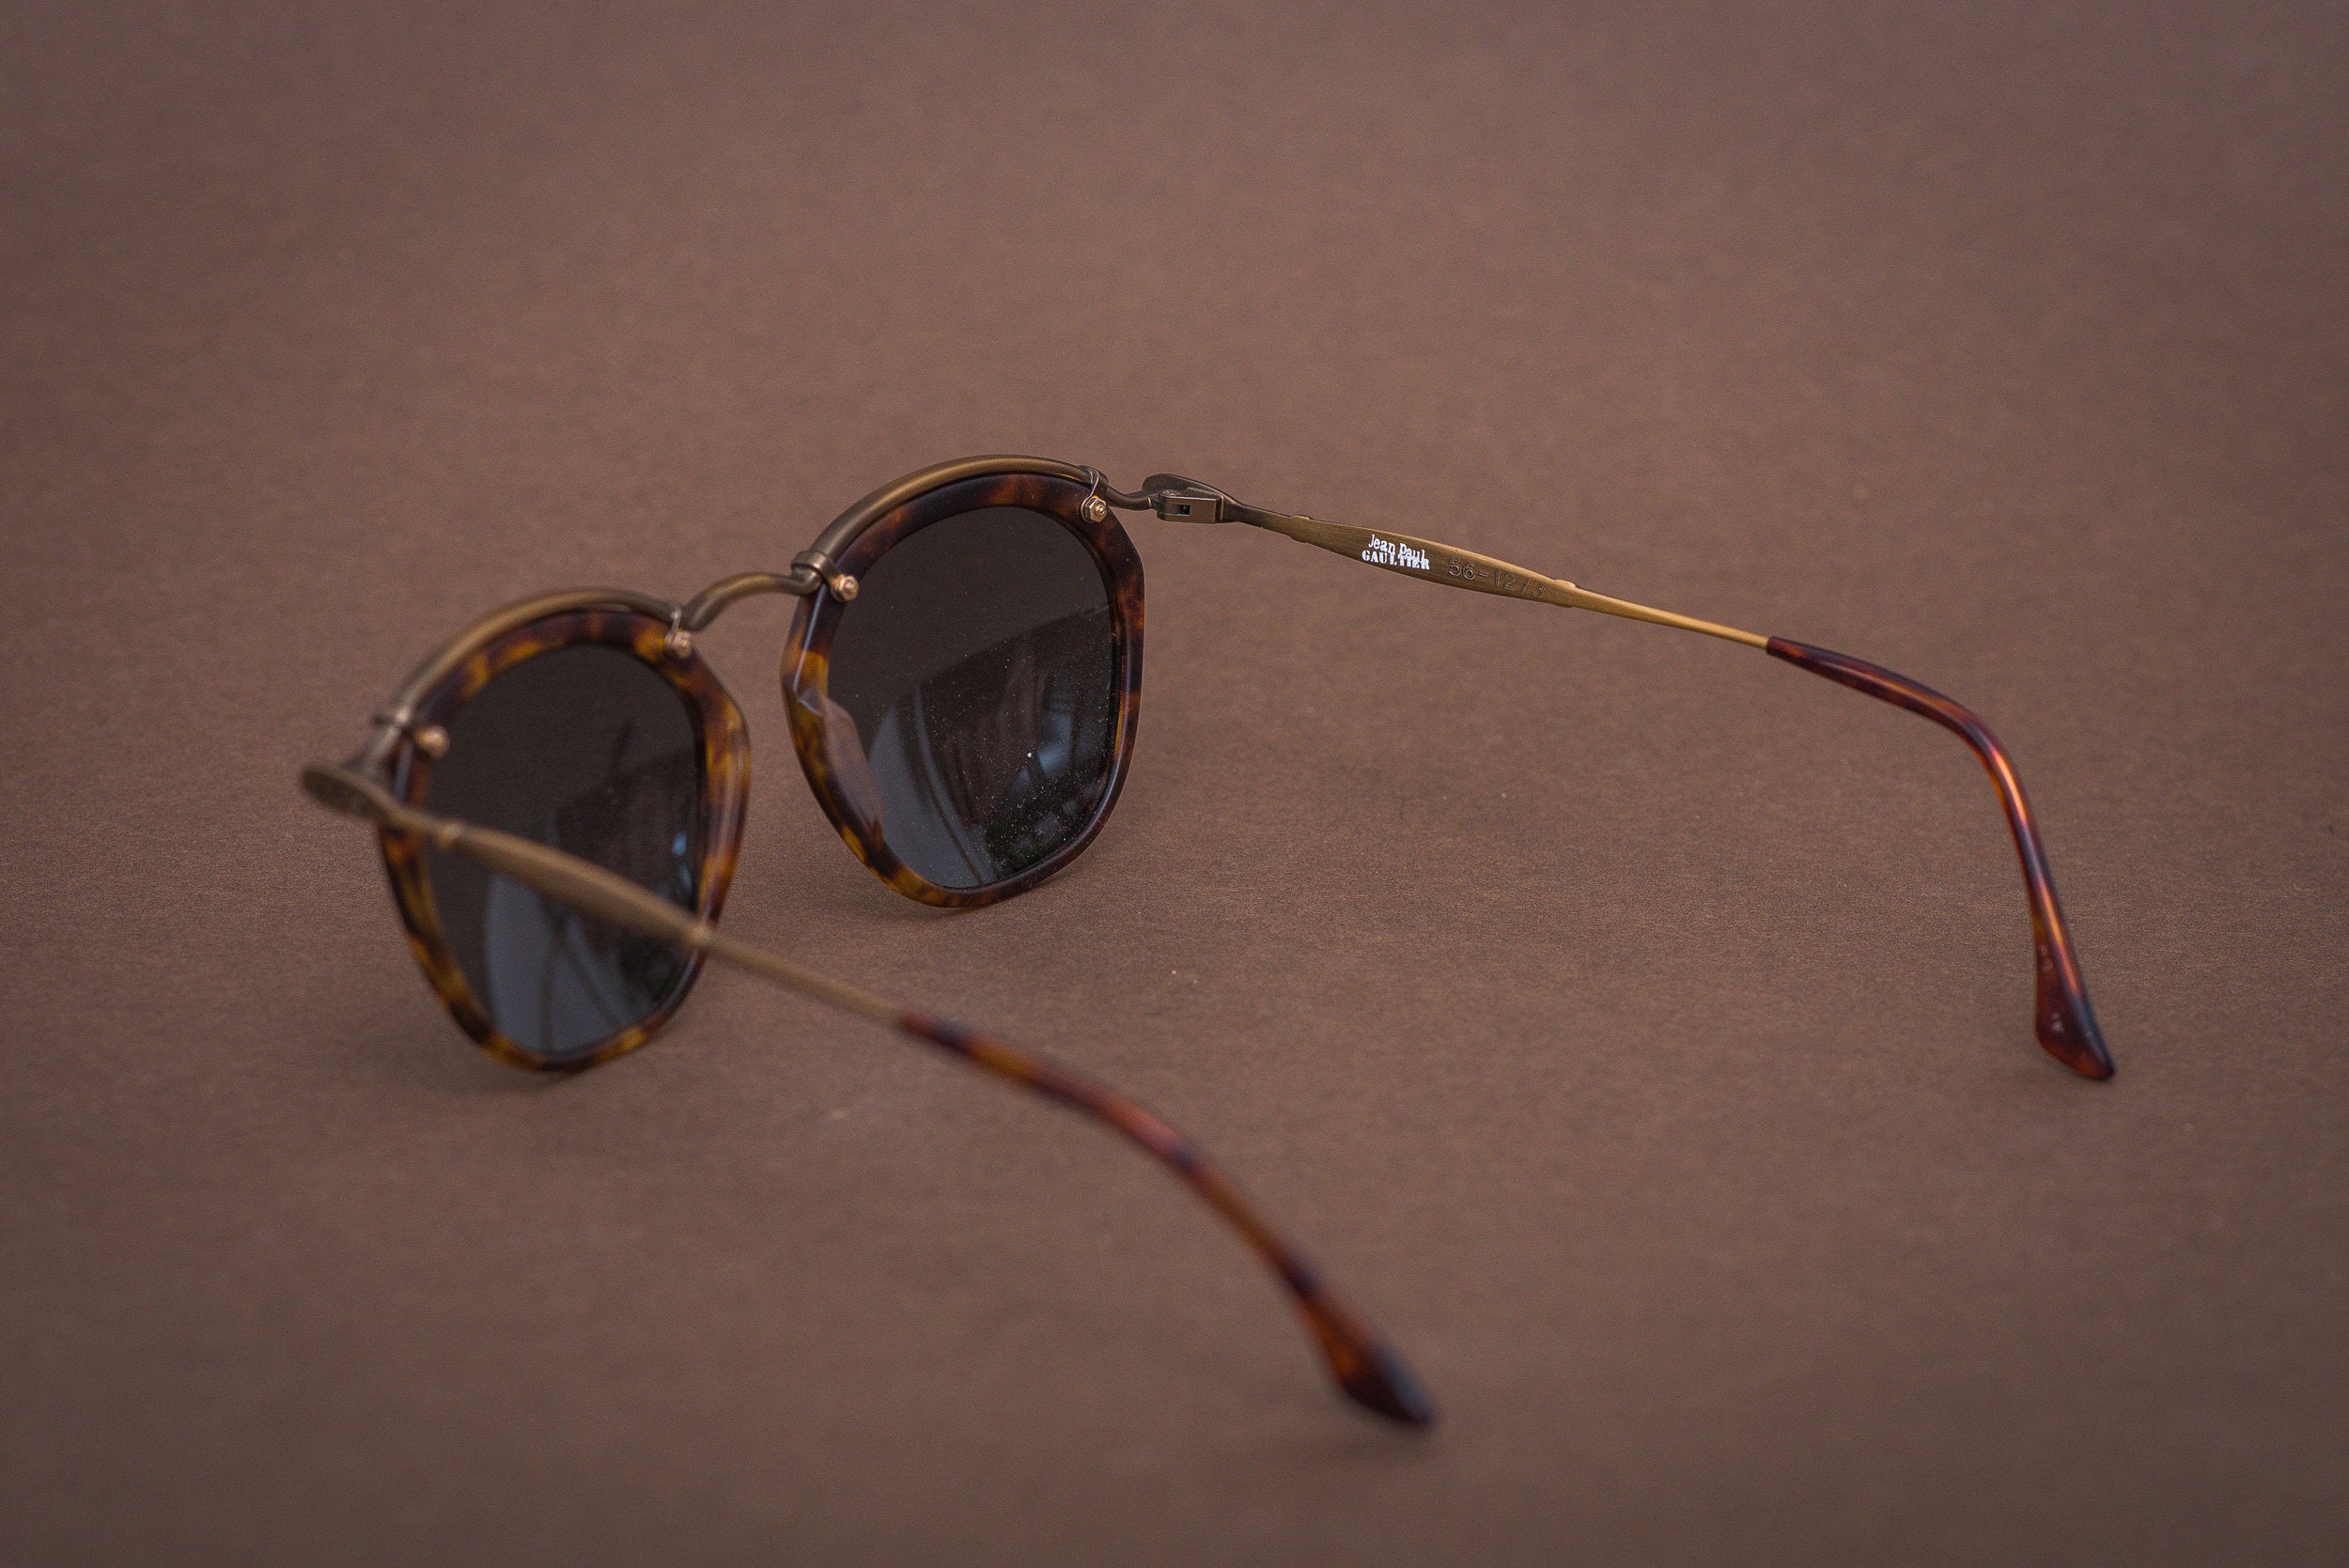 Jean Paul Gaultier 56-1273 sunglasses